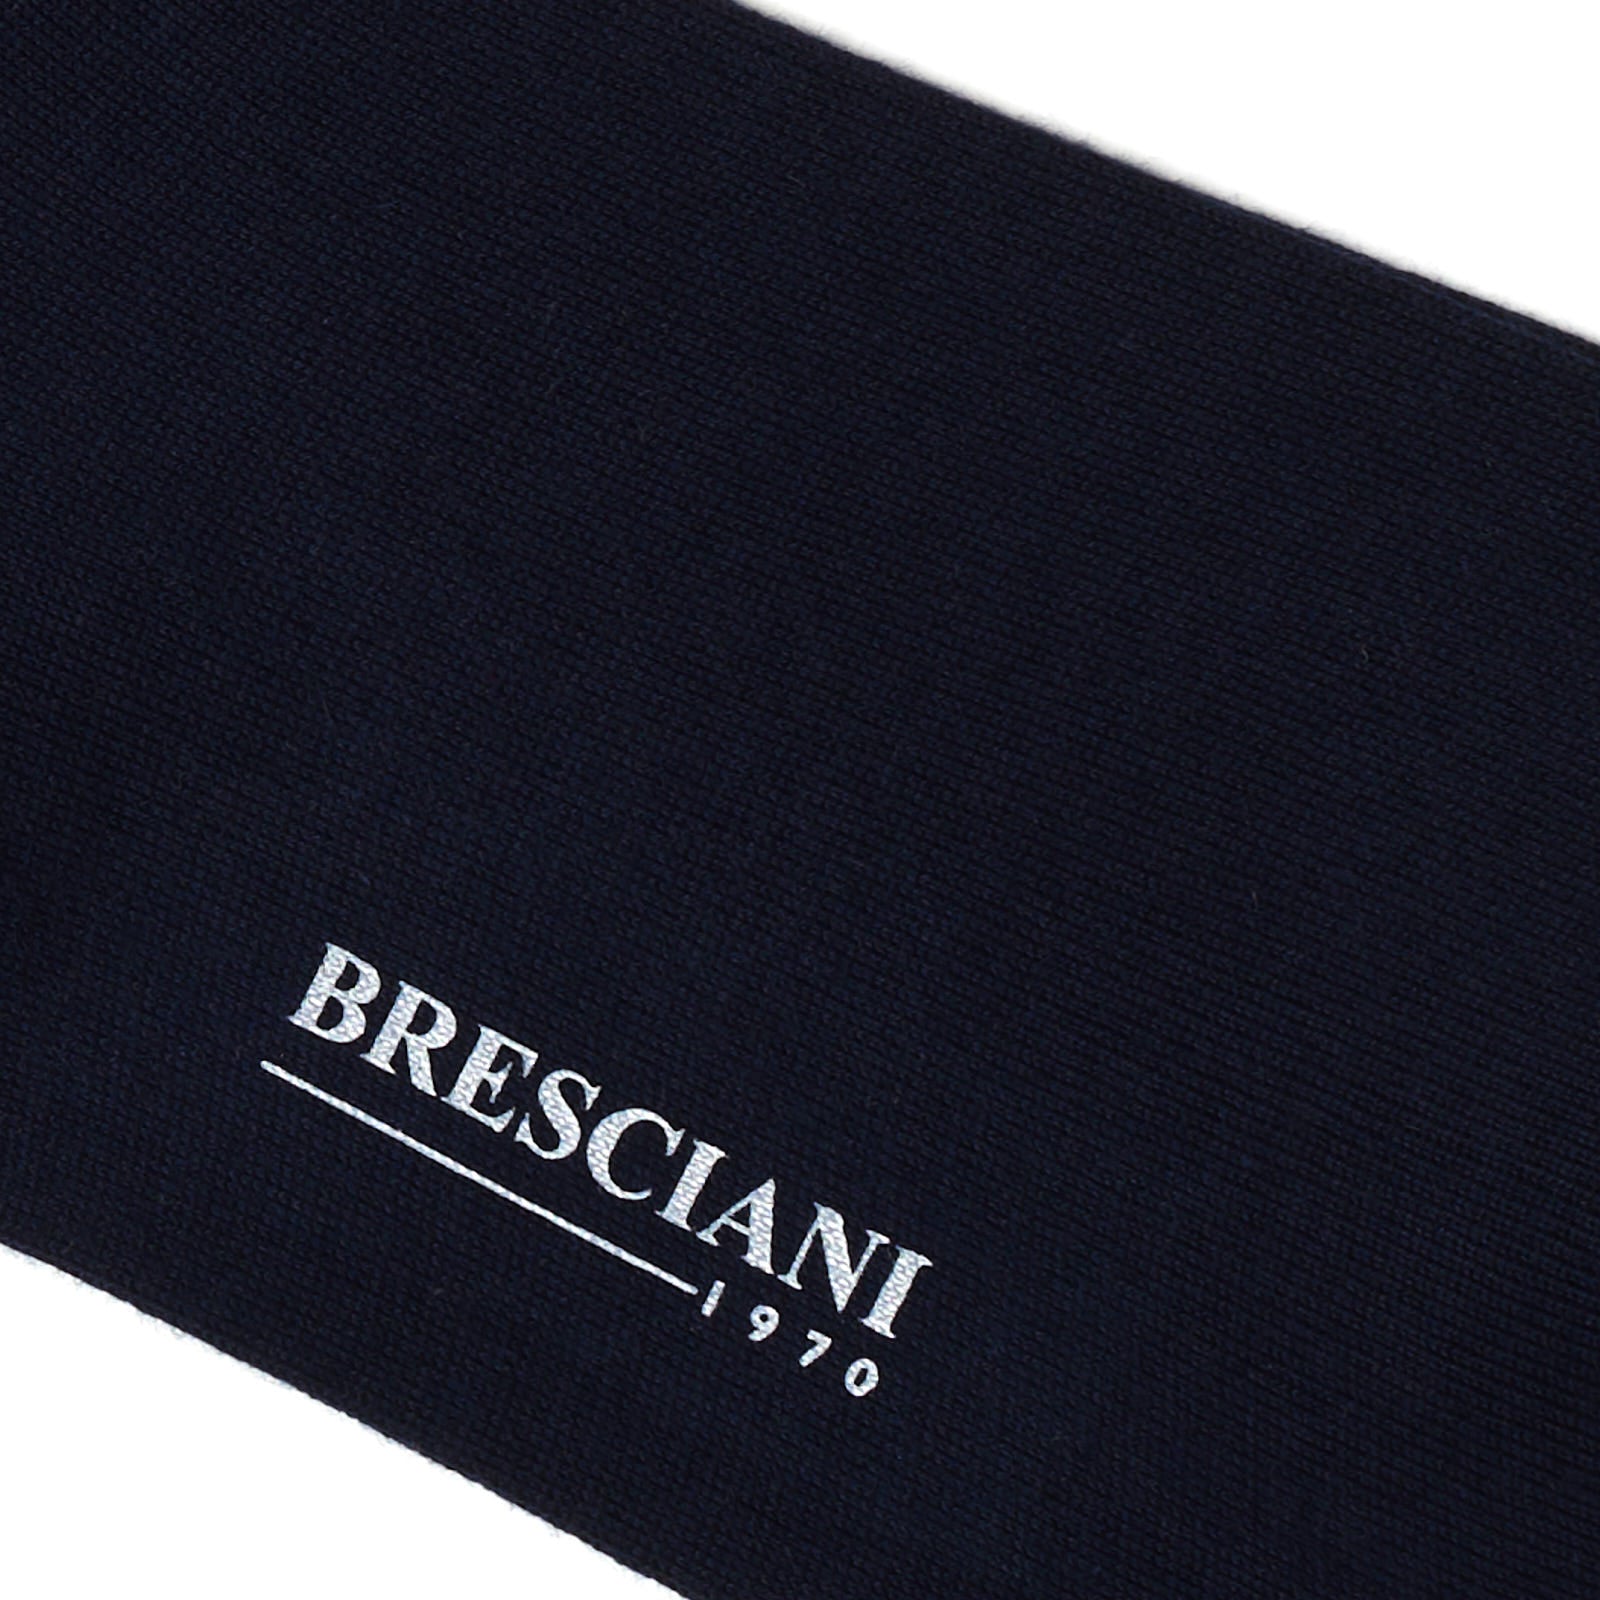 BRESCIANI "Lorenzo" Organic Cotton Mid Calf Length Socks M-L BRESCIANI